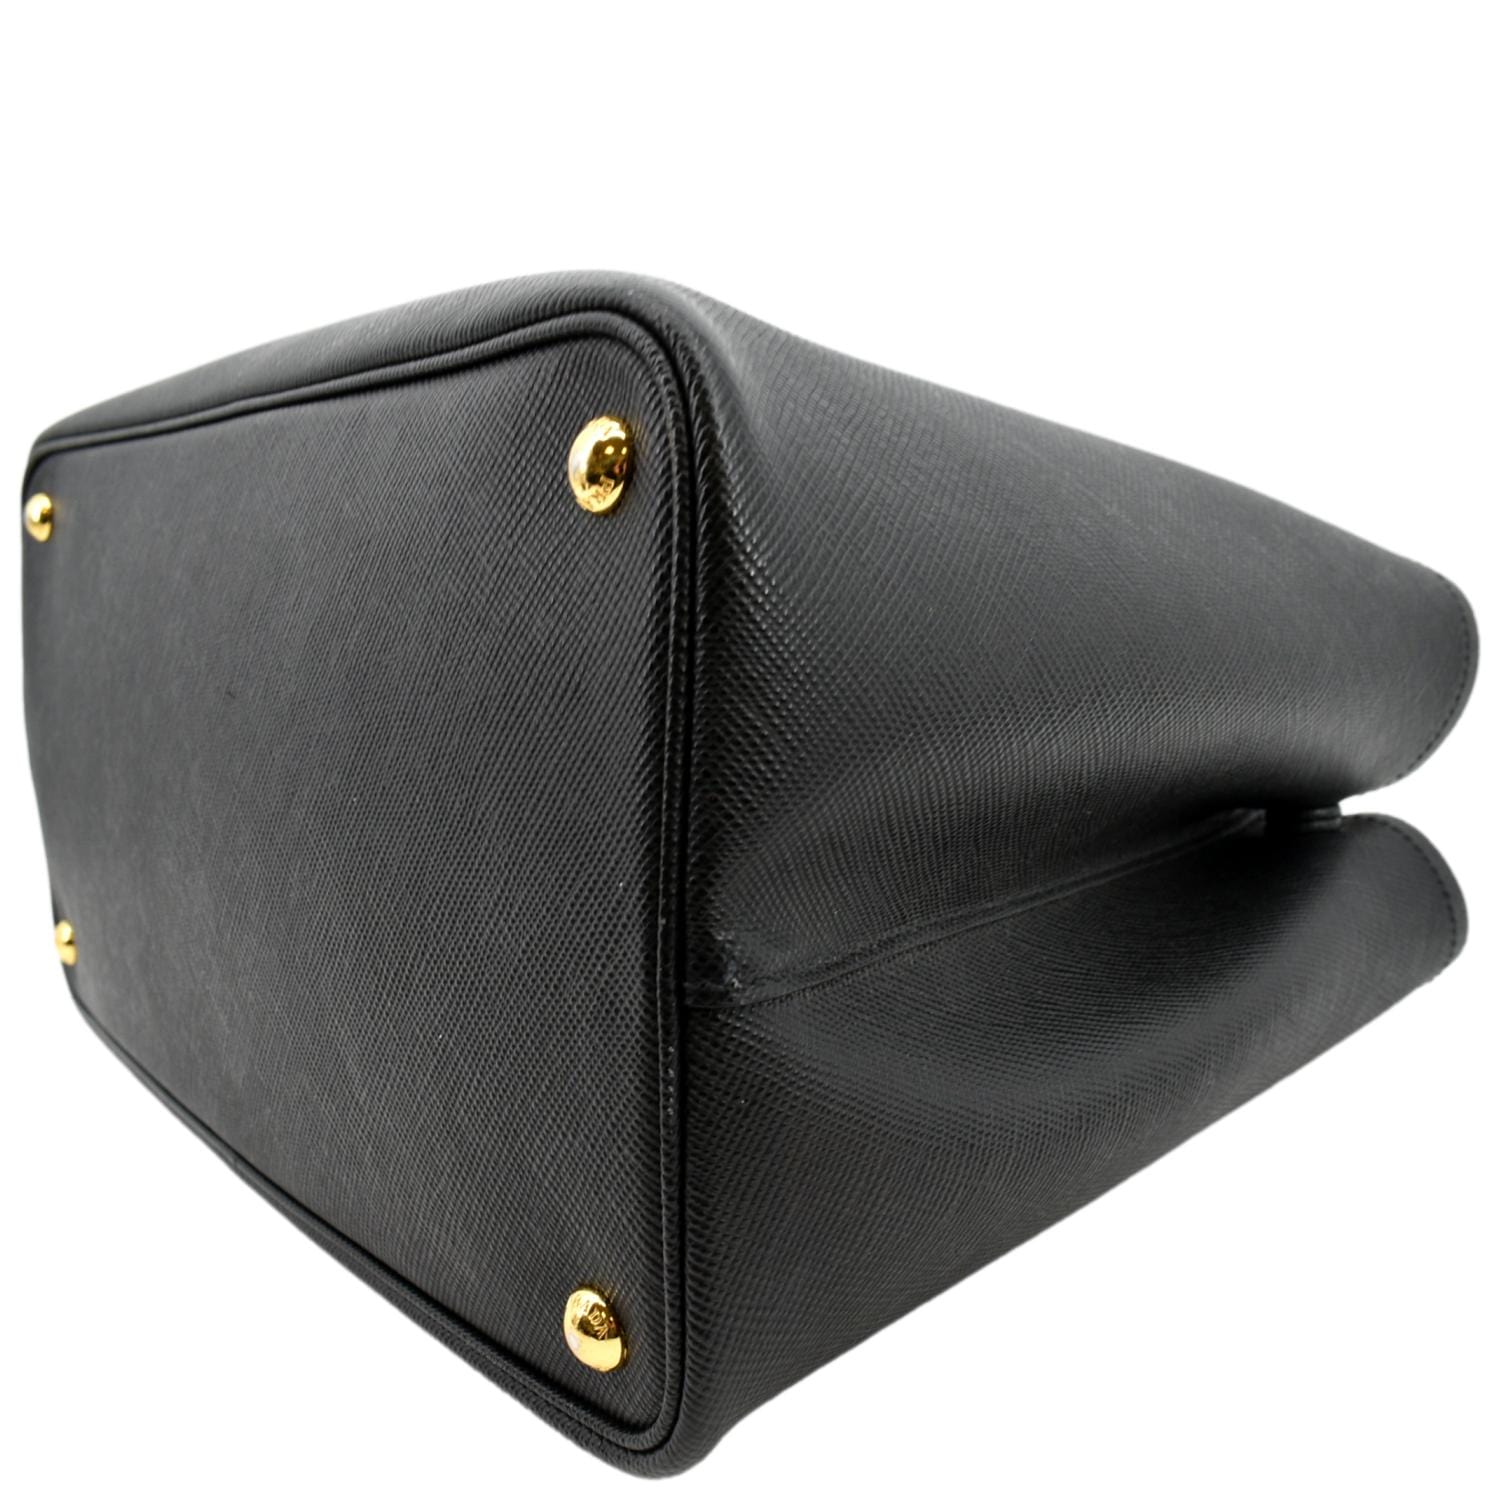 Prada Black Saffiano & Calfskin Leather Medium Monochrome Bag